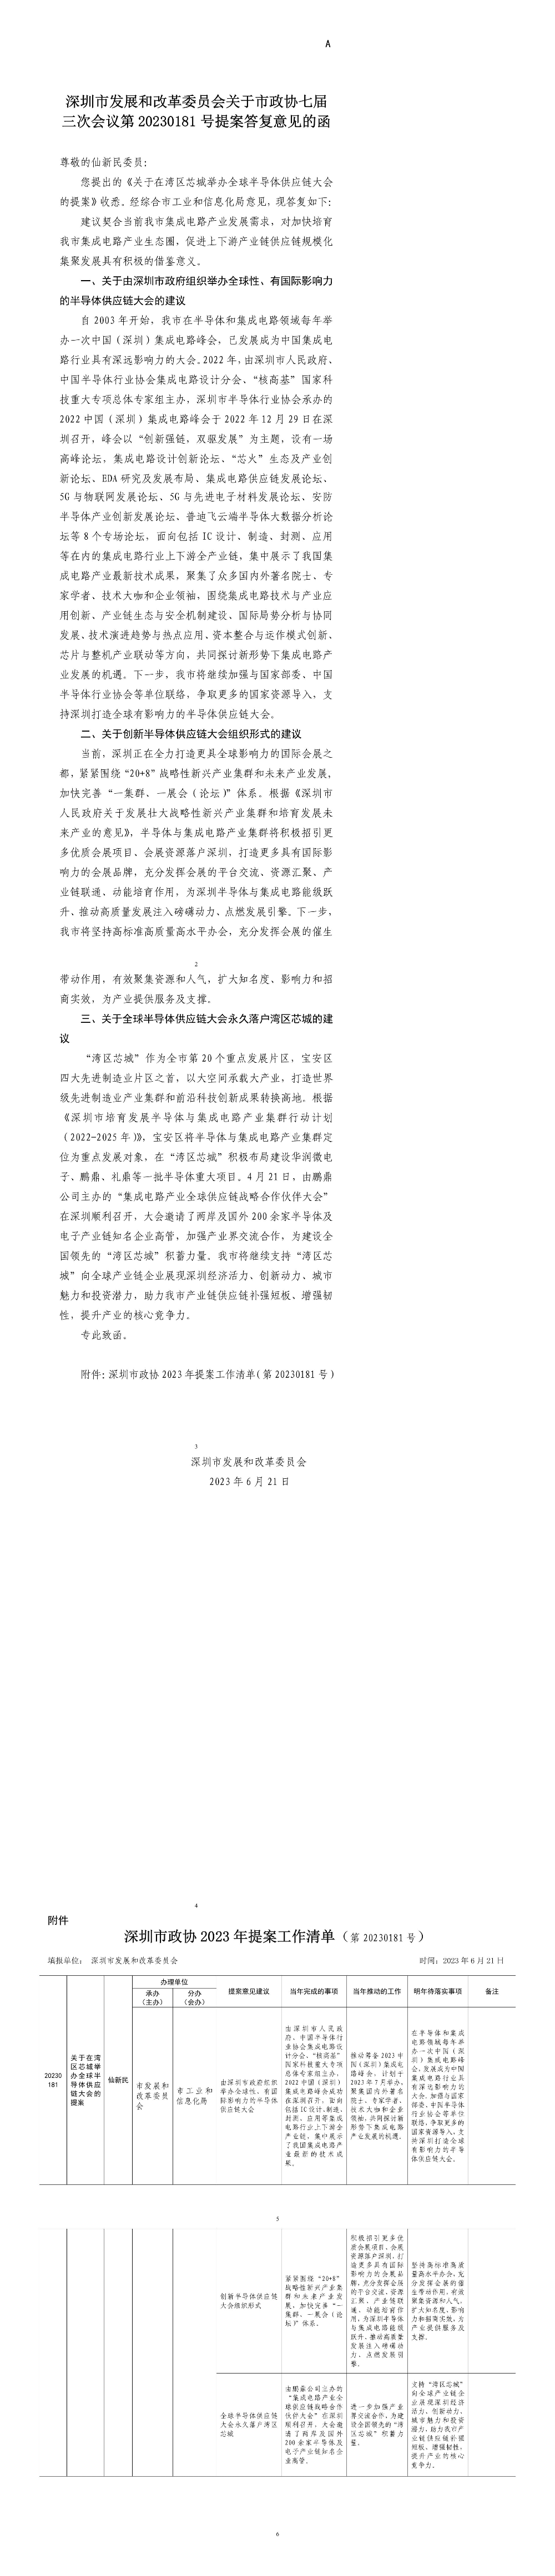 深圳市发展和改革委员会关于市政协七届三次会议第20230181号提案答复意见的函.jpg